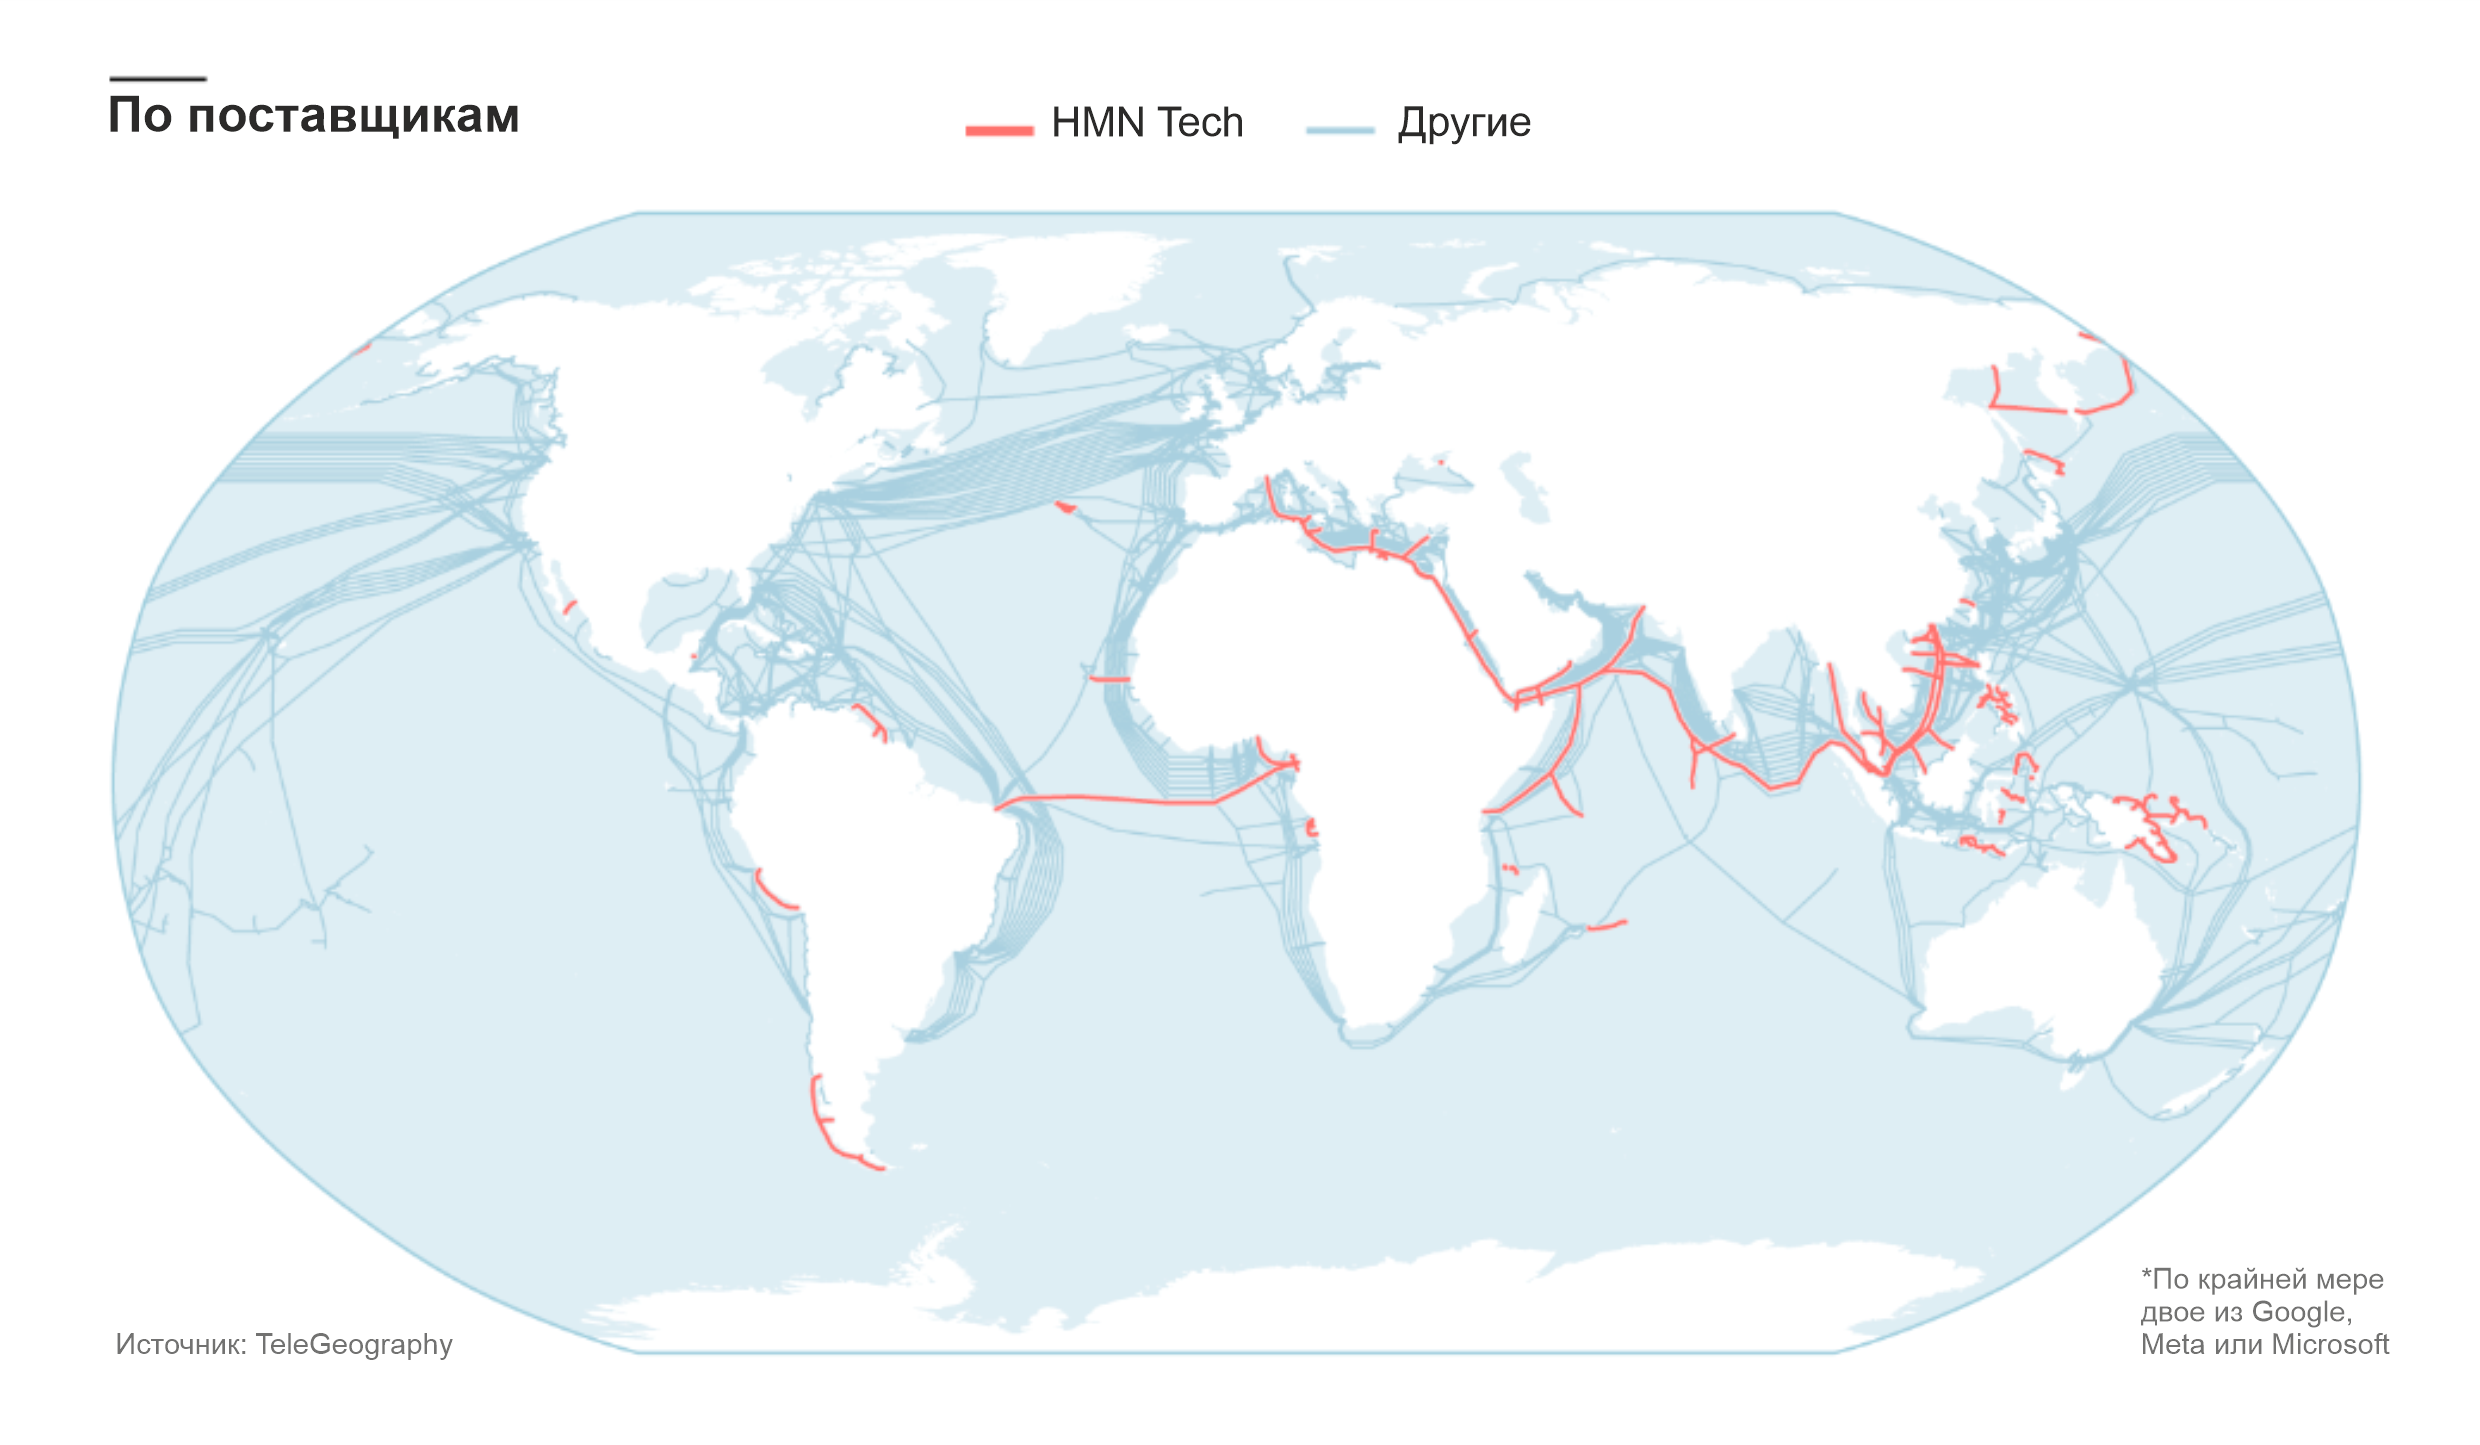 Большие технологии и геополитика трансформируют подводную сетевую инфраструктуру